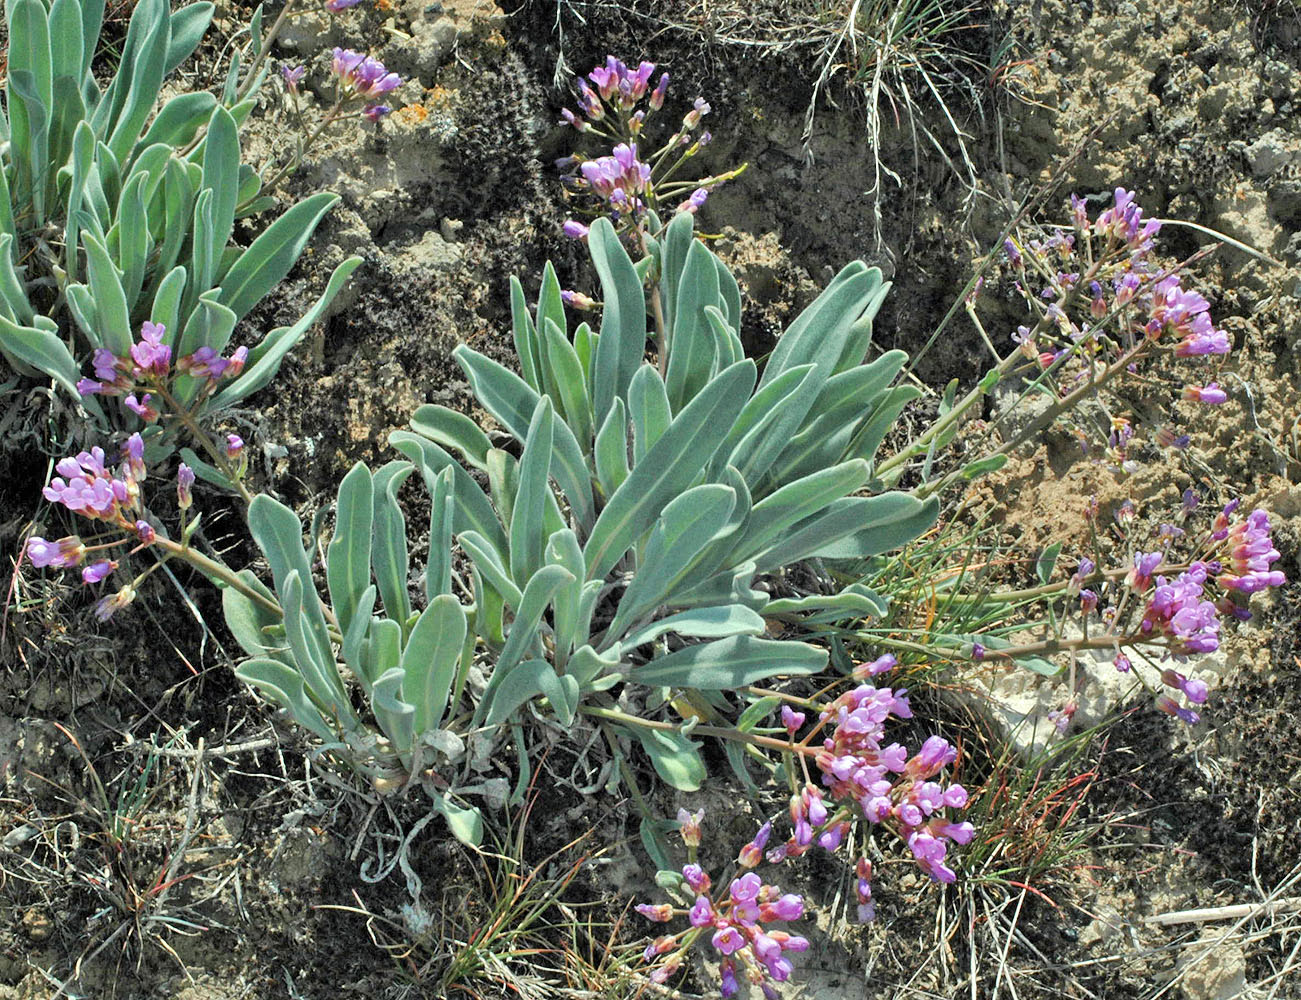 Flora of Eastern Washington Image: Phoenicaulis cheiranthoides